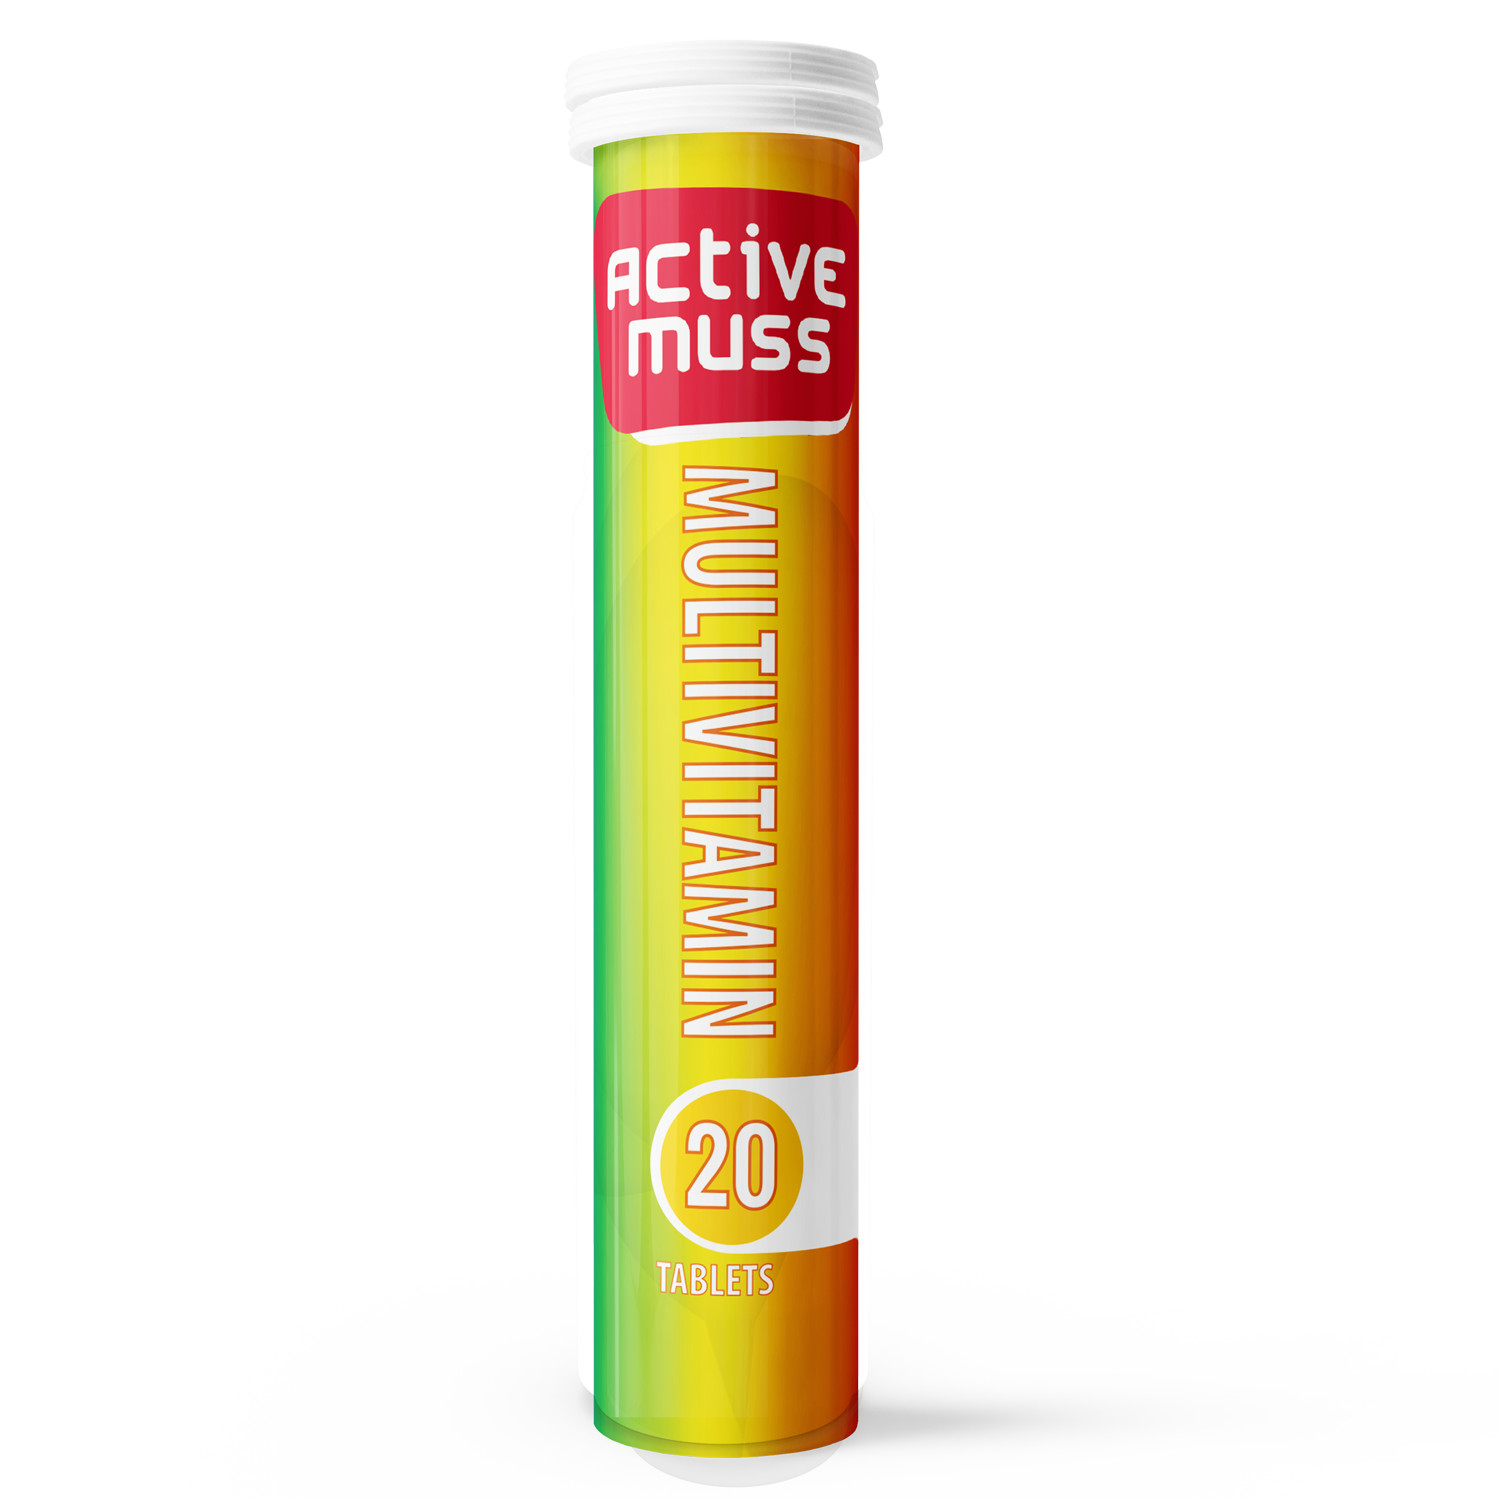 Viên Sủi Activemuss Multivitamin, Lựa Chọn Hoàn Hảo Để Bổ Sung Các Vitamin Cần Thiết, Hỗ Trợ Tăng Cường Hệ Miễn Dịch, Cải Thiện Sức Khỏe Tim Mạch Và Duy Trì Sức Khỏe Chung Cho Cơ Thể. Tuýp 20 Viên Sủi.